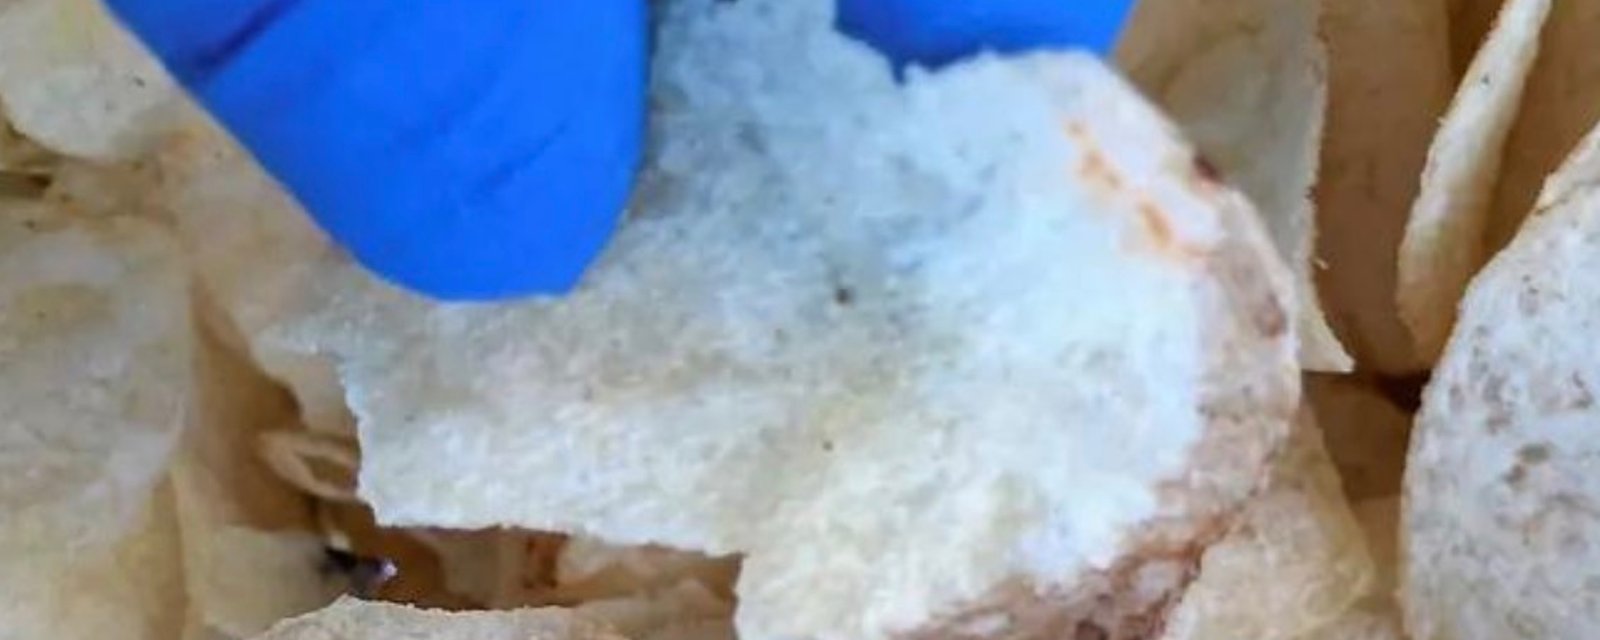 Un couple de Trois-Rivières découvre une souris morte dans leur sac de chips.